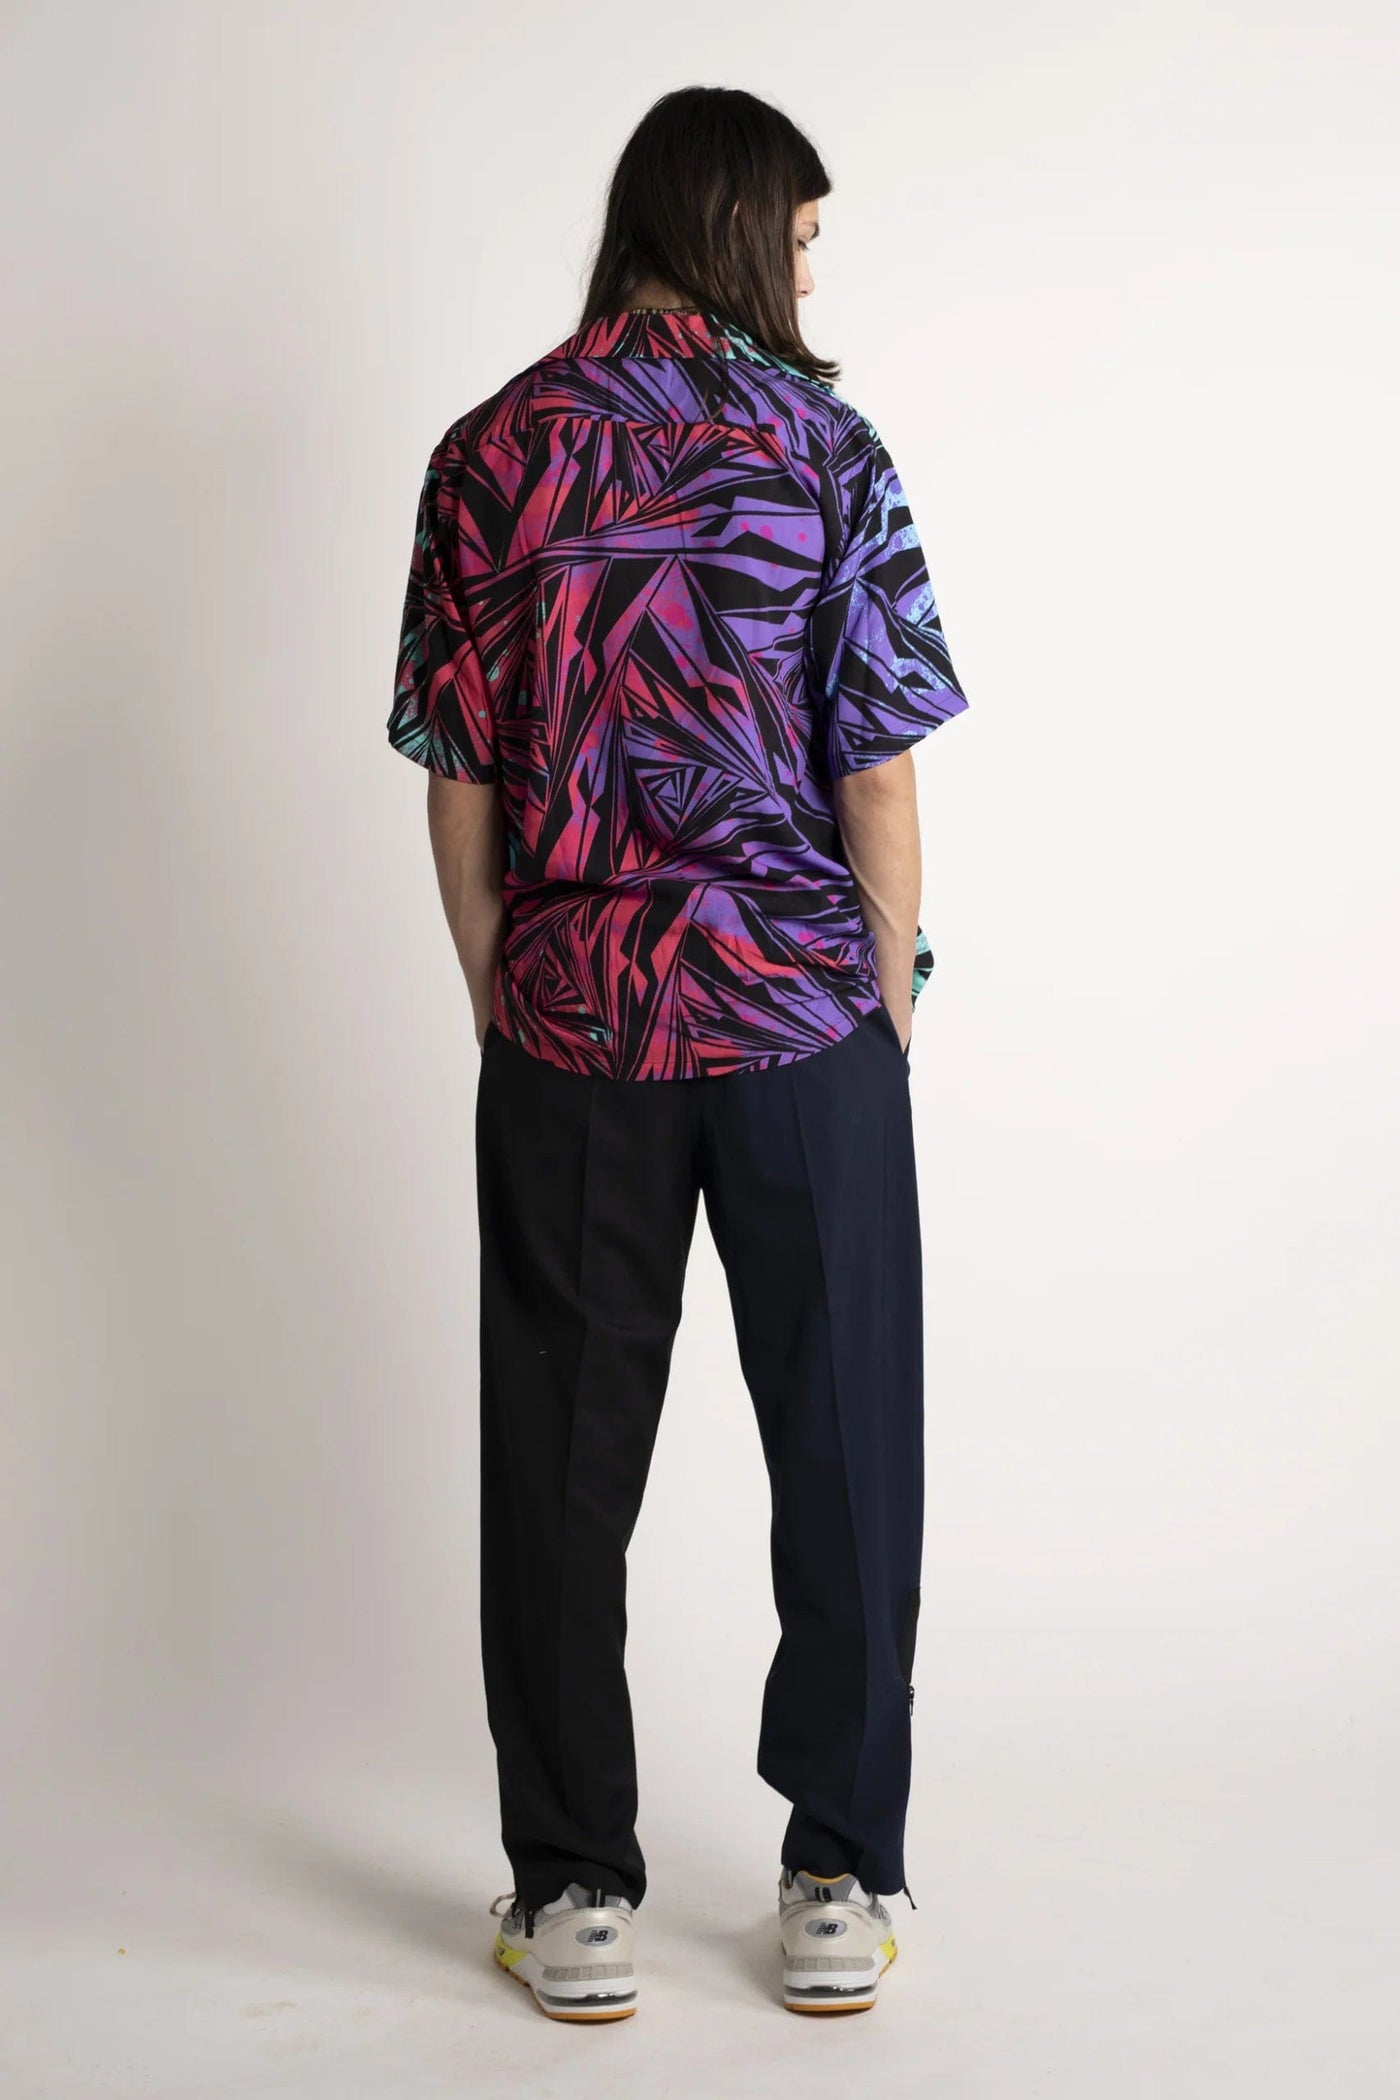 Aries Vortex Hawaiian Shirt